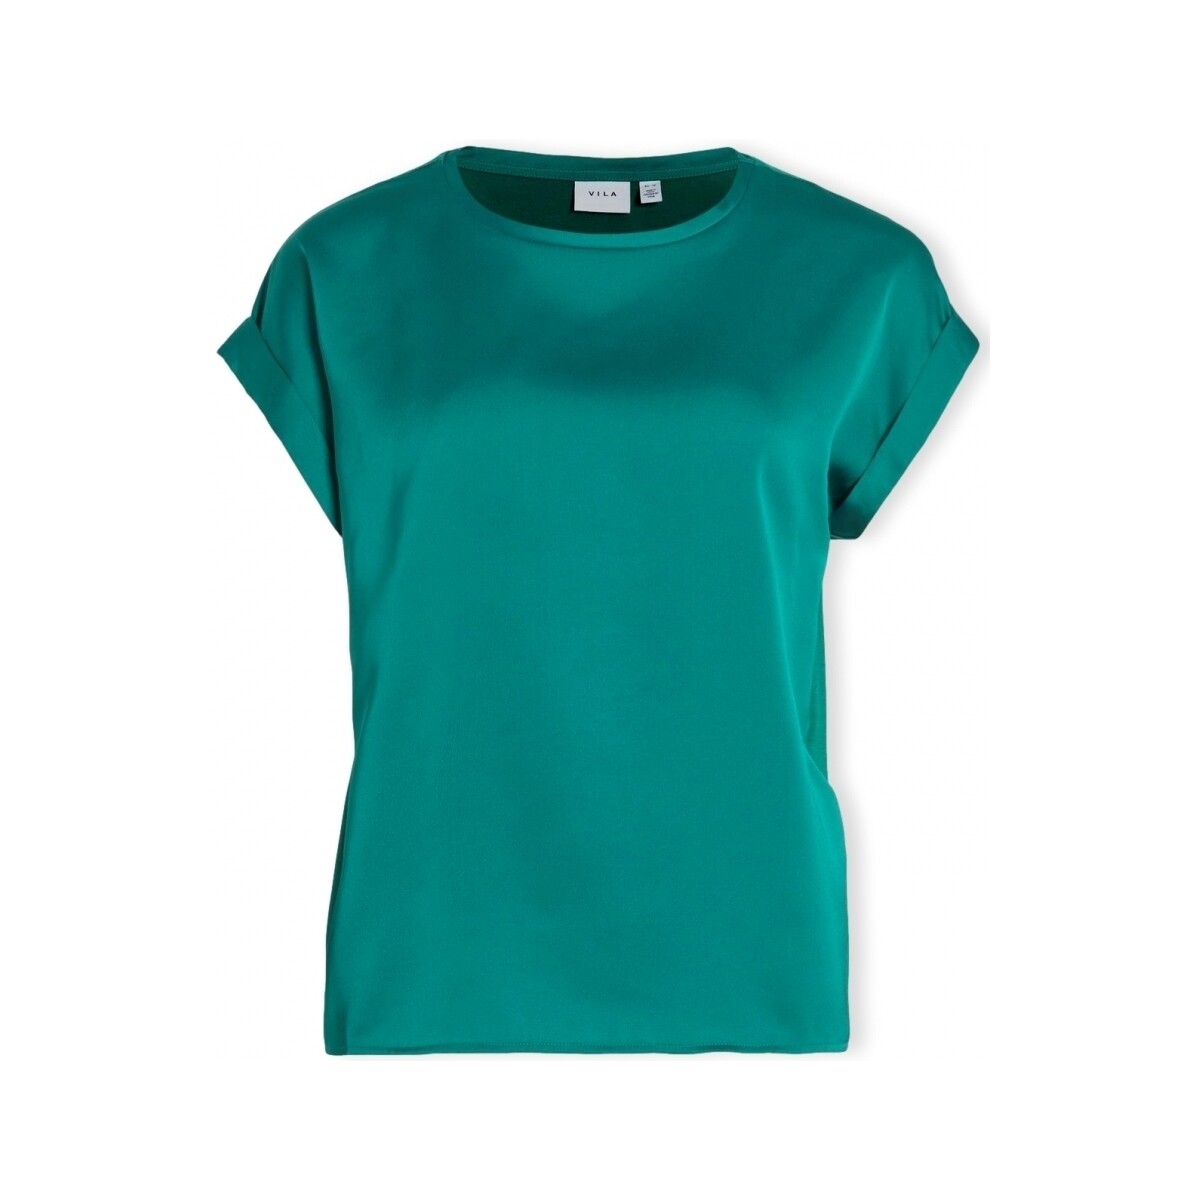 Υφασμάτινα Γυναίκα Μπλούζες Vila Noos Top Ellette - Ultramarine Green Green